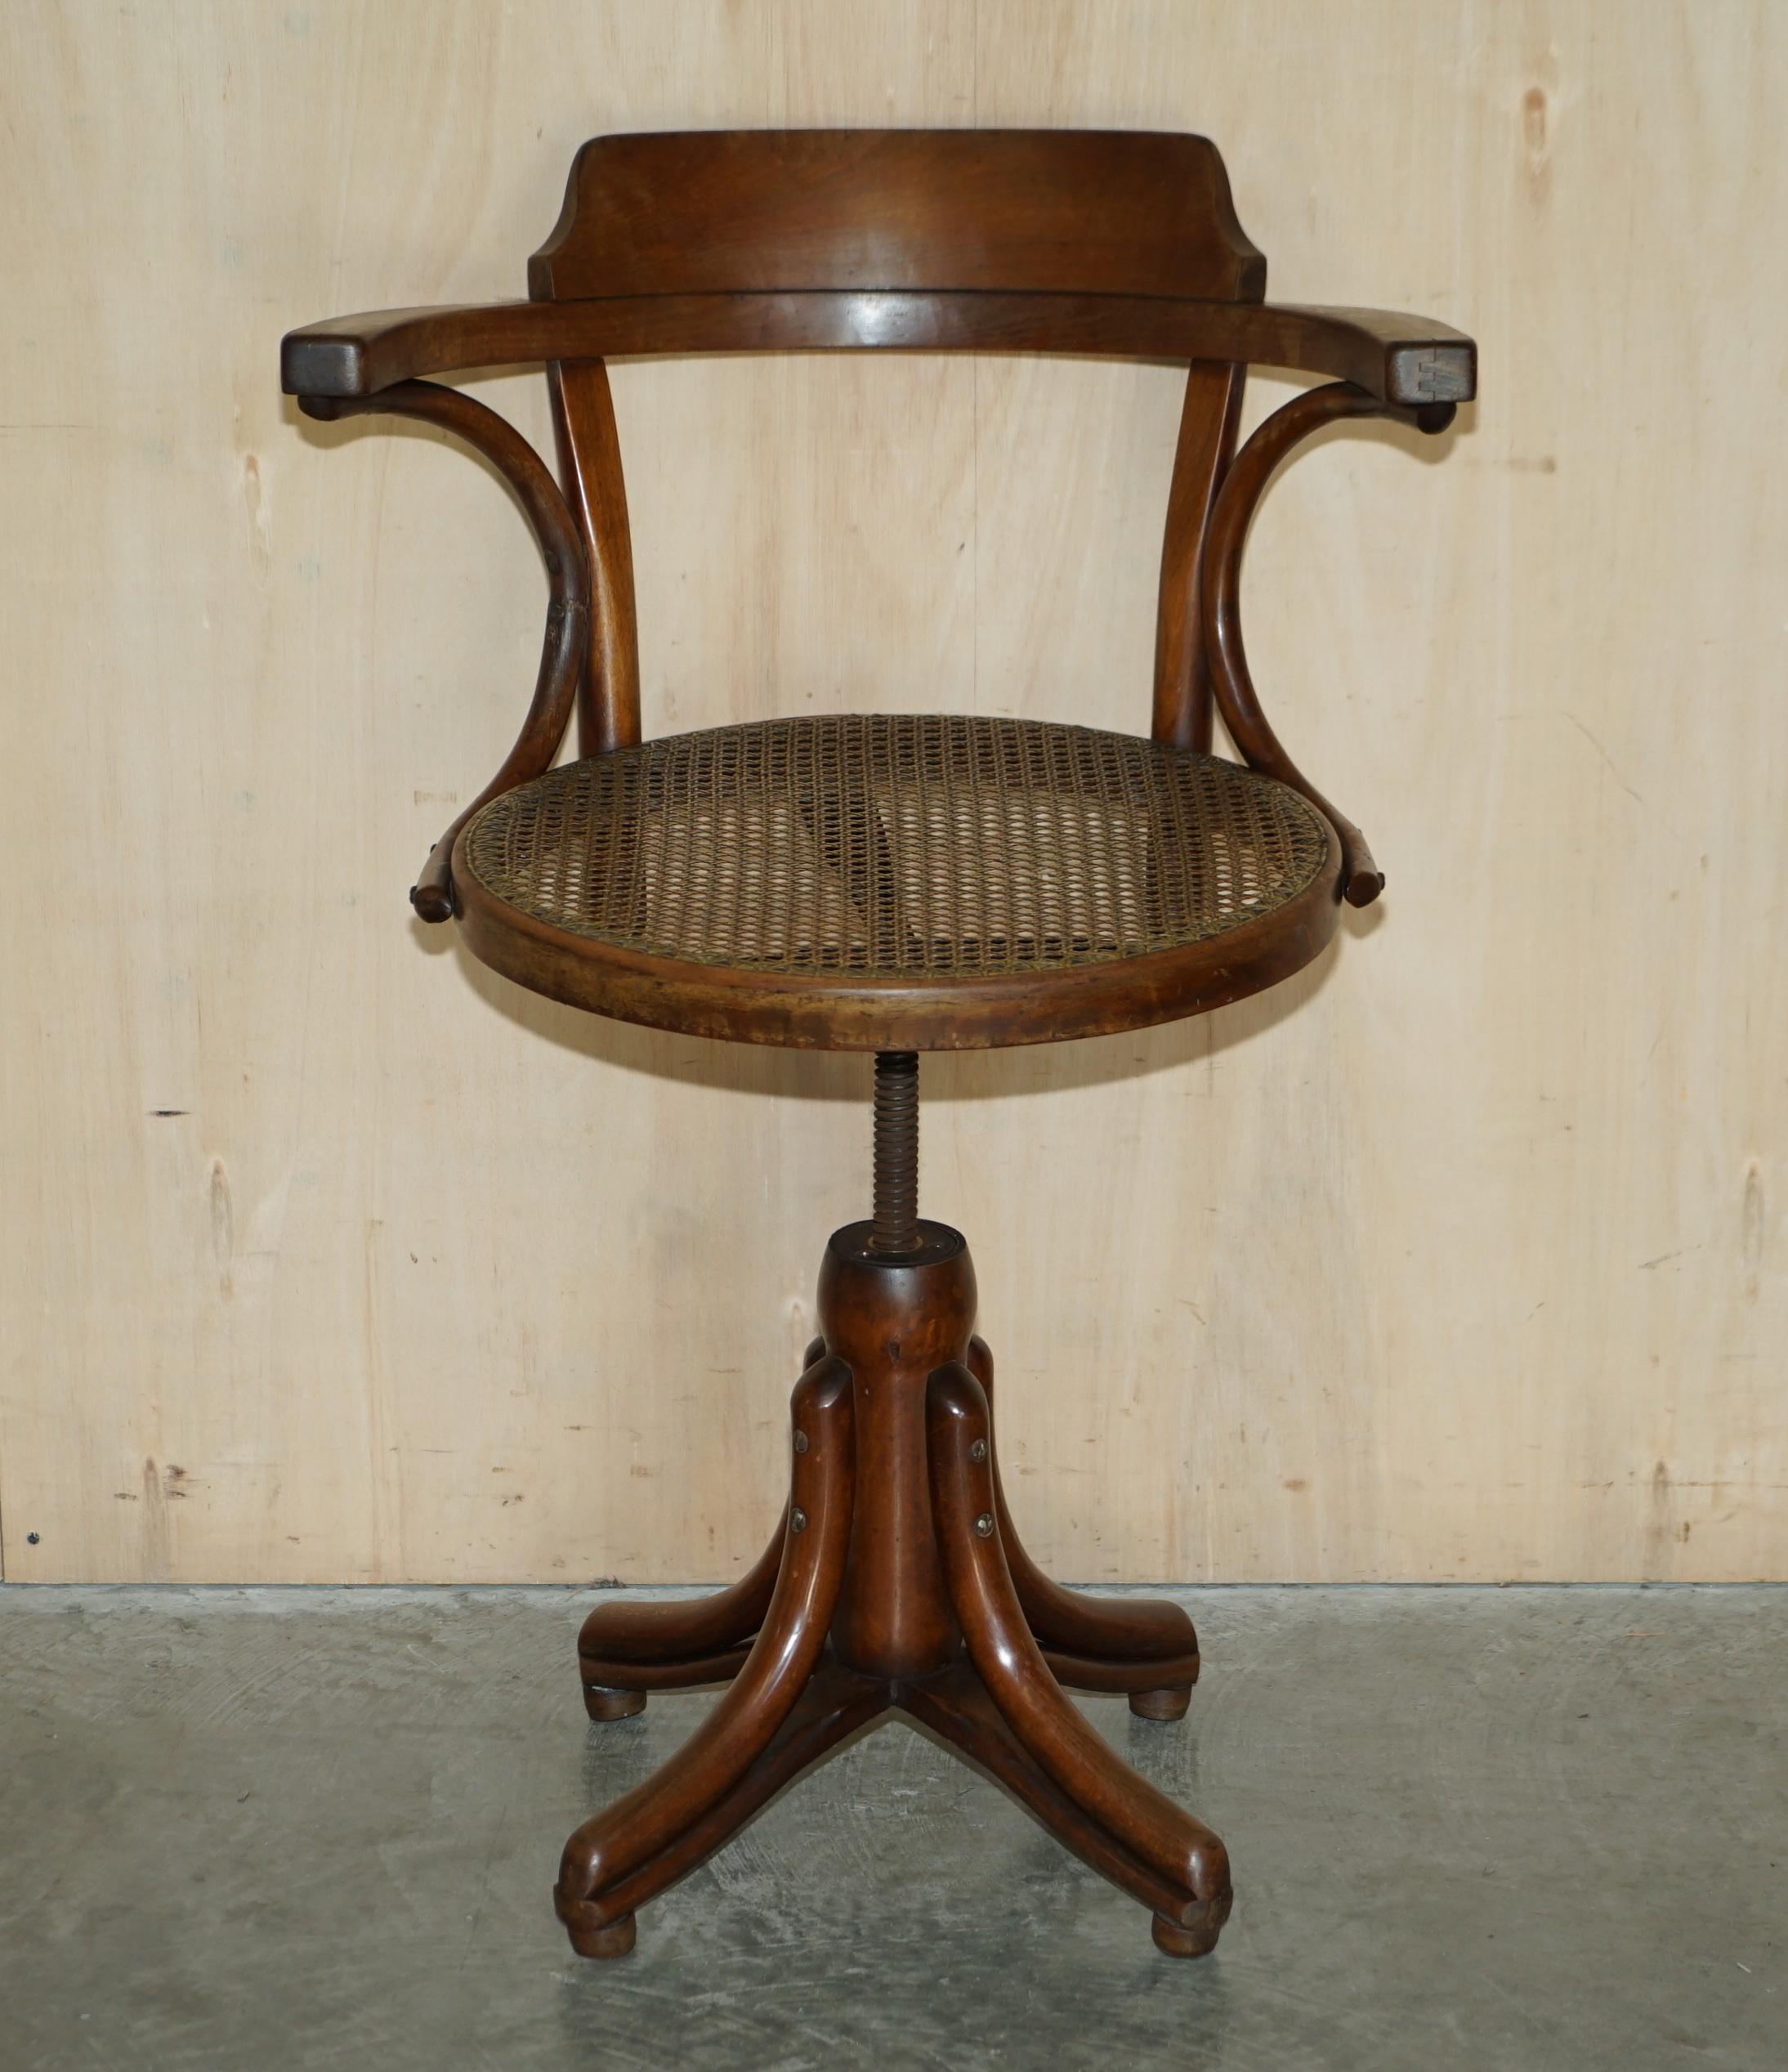 Royal House Antiques

Royal House Antiques a le plaisir d'offrir à la vente ce fauteuil bergère pivotant Thonet Modèle No 3, très rare, original et ancien, datant d'environ 1900.

Veuillez noter que les frais de livraison indiqués sont donnés à